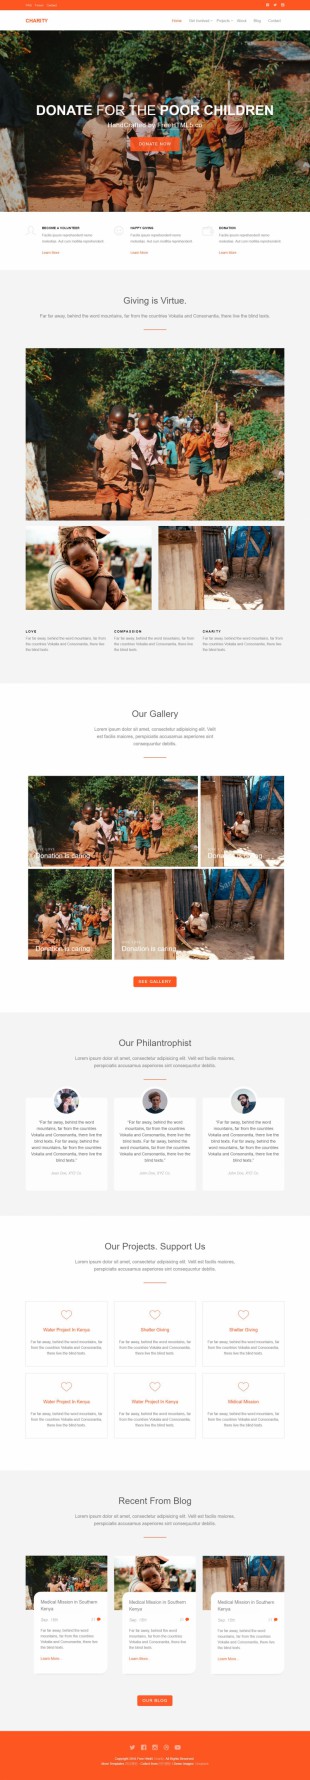 儿童公益组织企业官网模板网站制作电脑图片